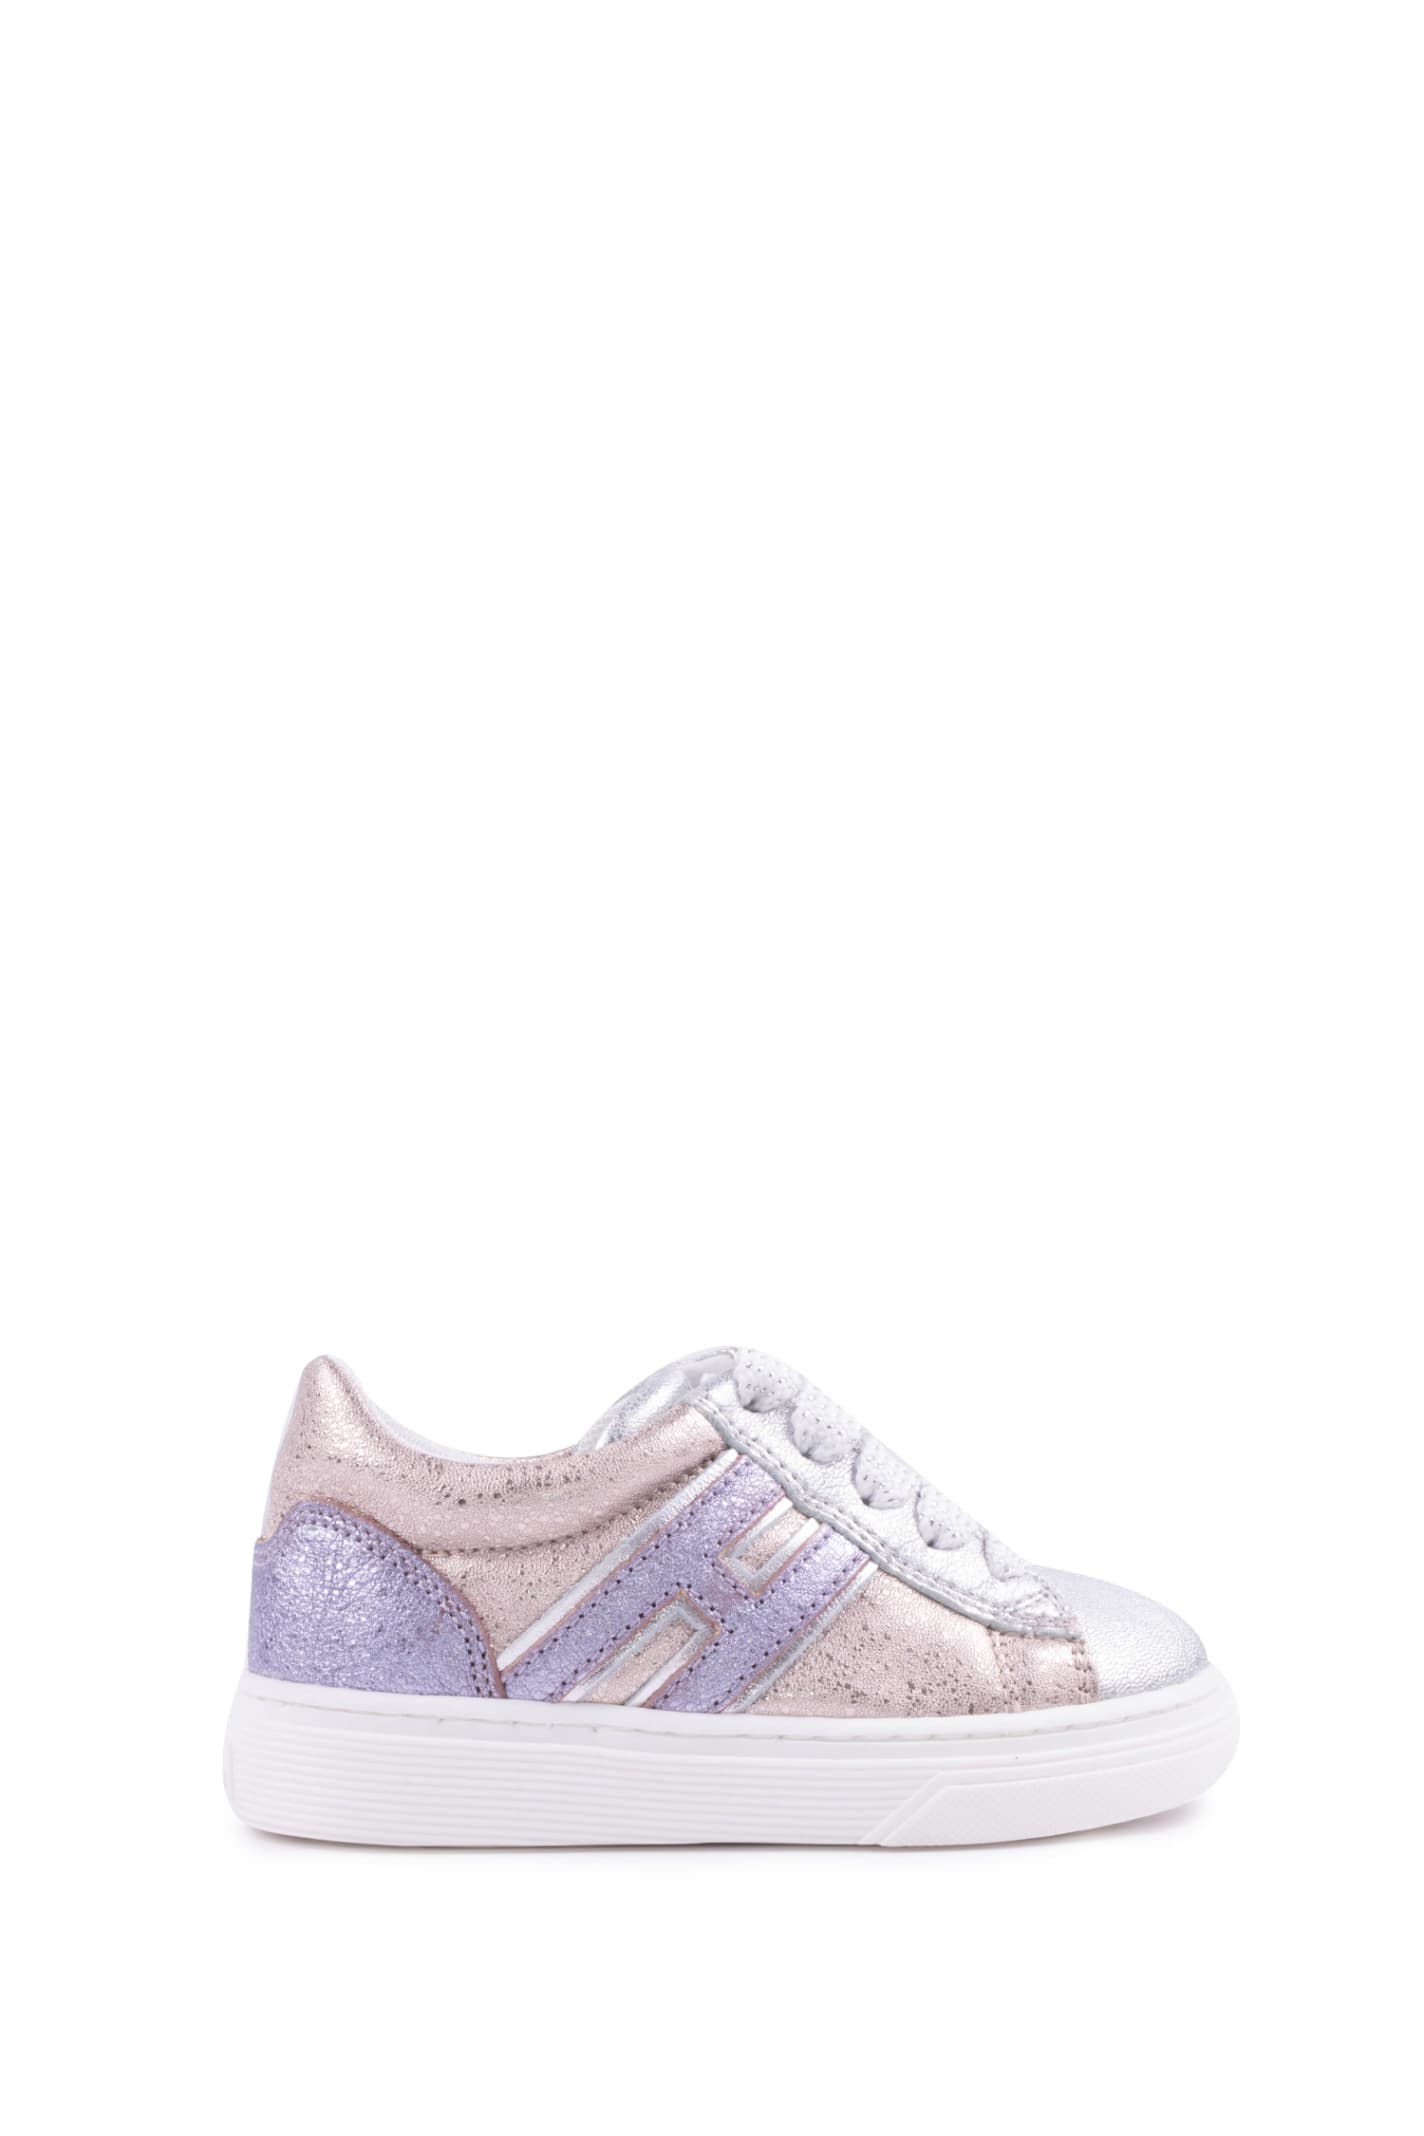 Hogan H365 Silver Purple Pink Sneakers